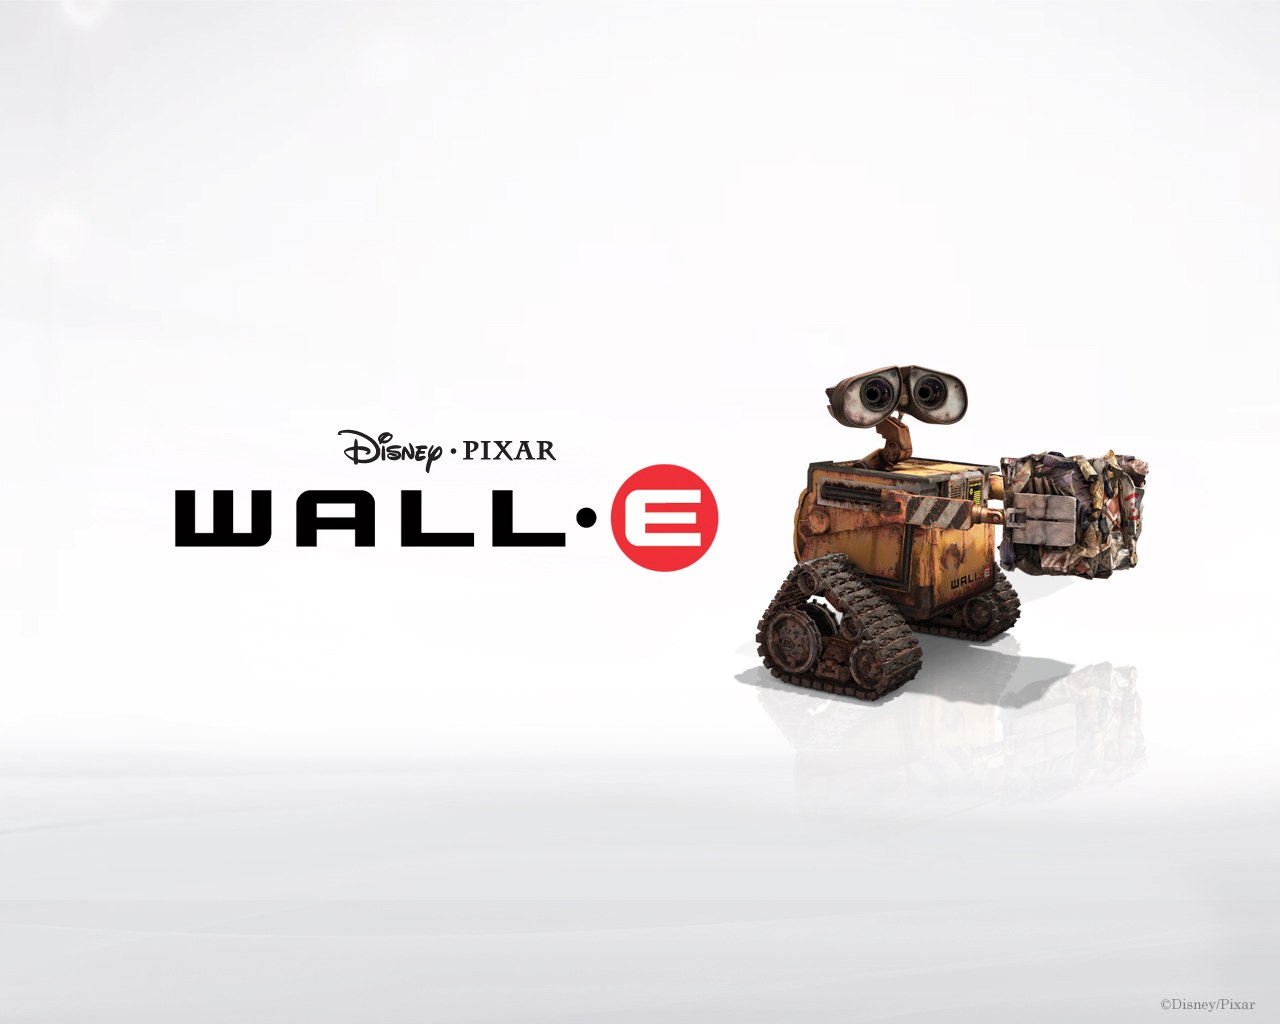 Fond d'ecran Wall-e le robot Disney Pixar